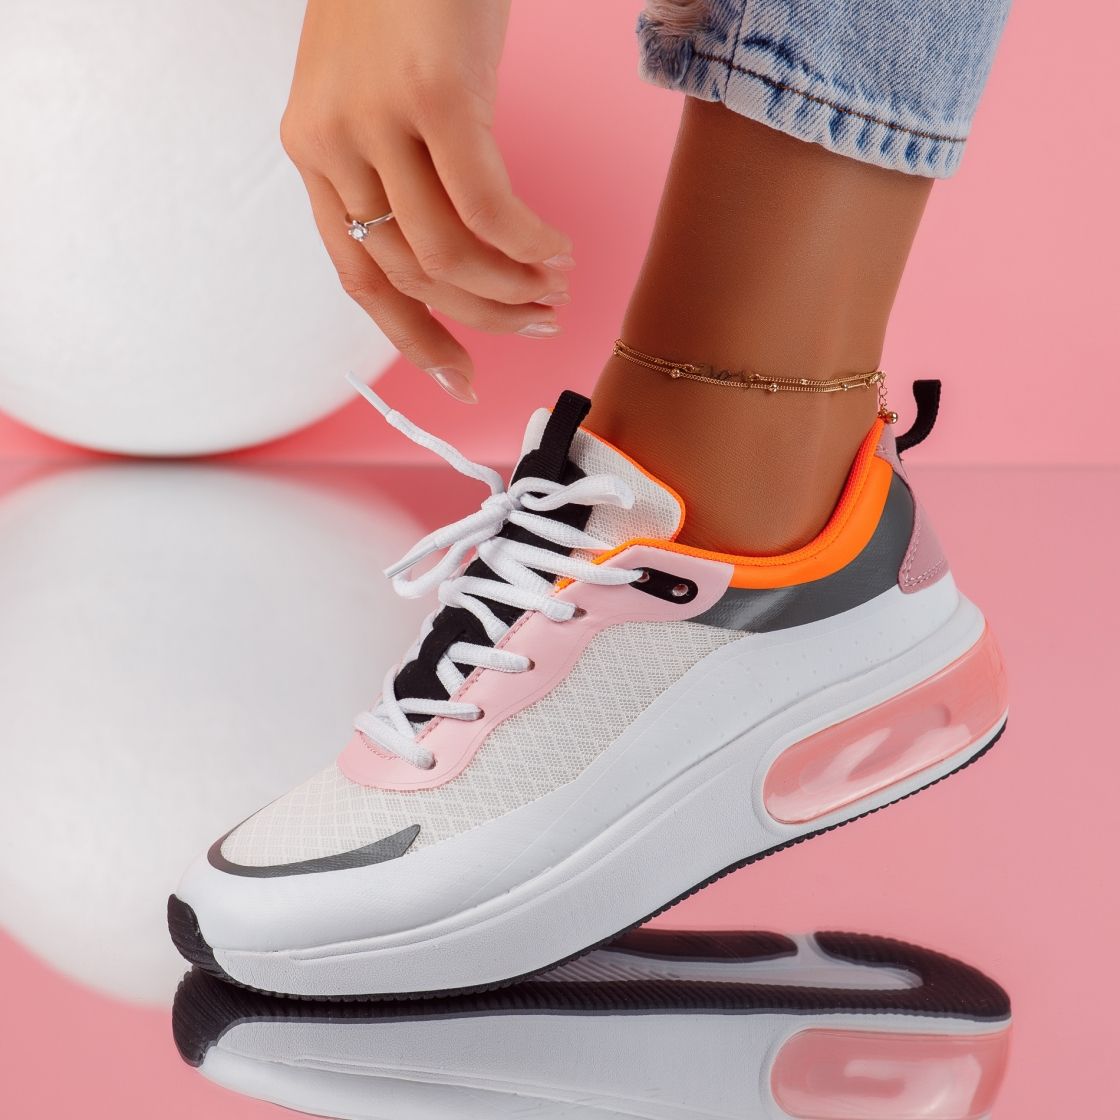 Дамски спортни обувки Elise2 бял/розово #5196M